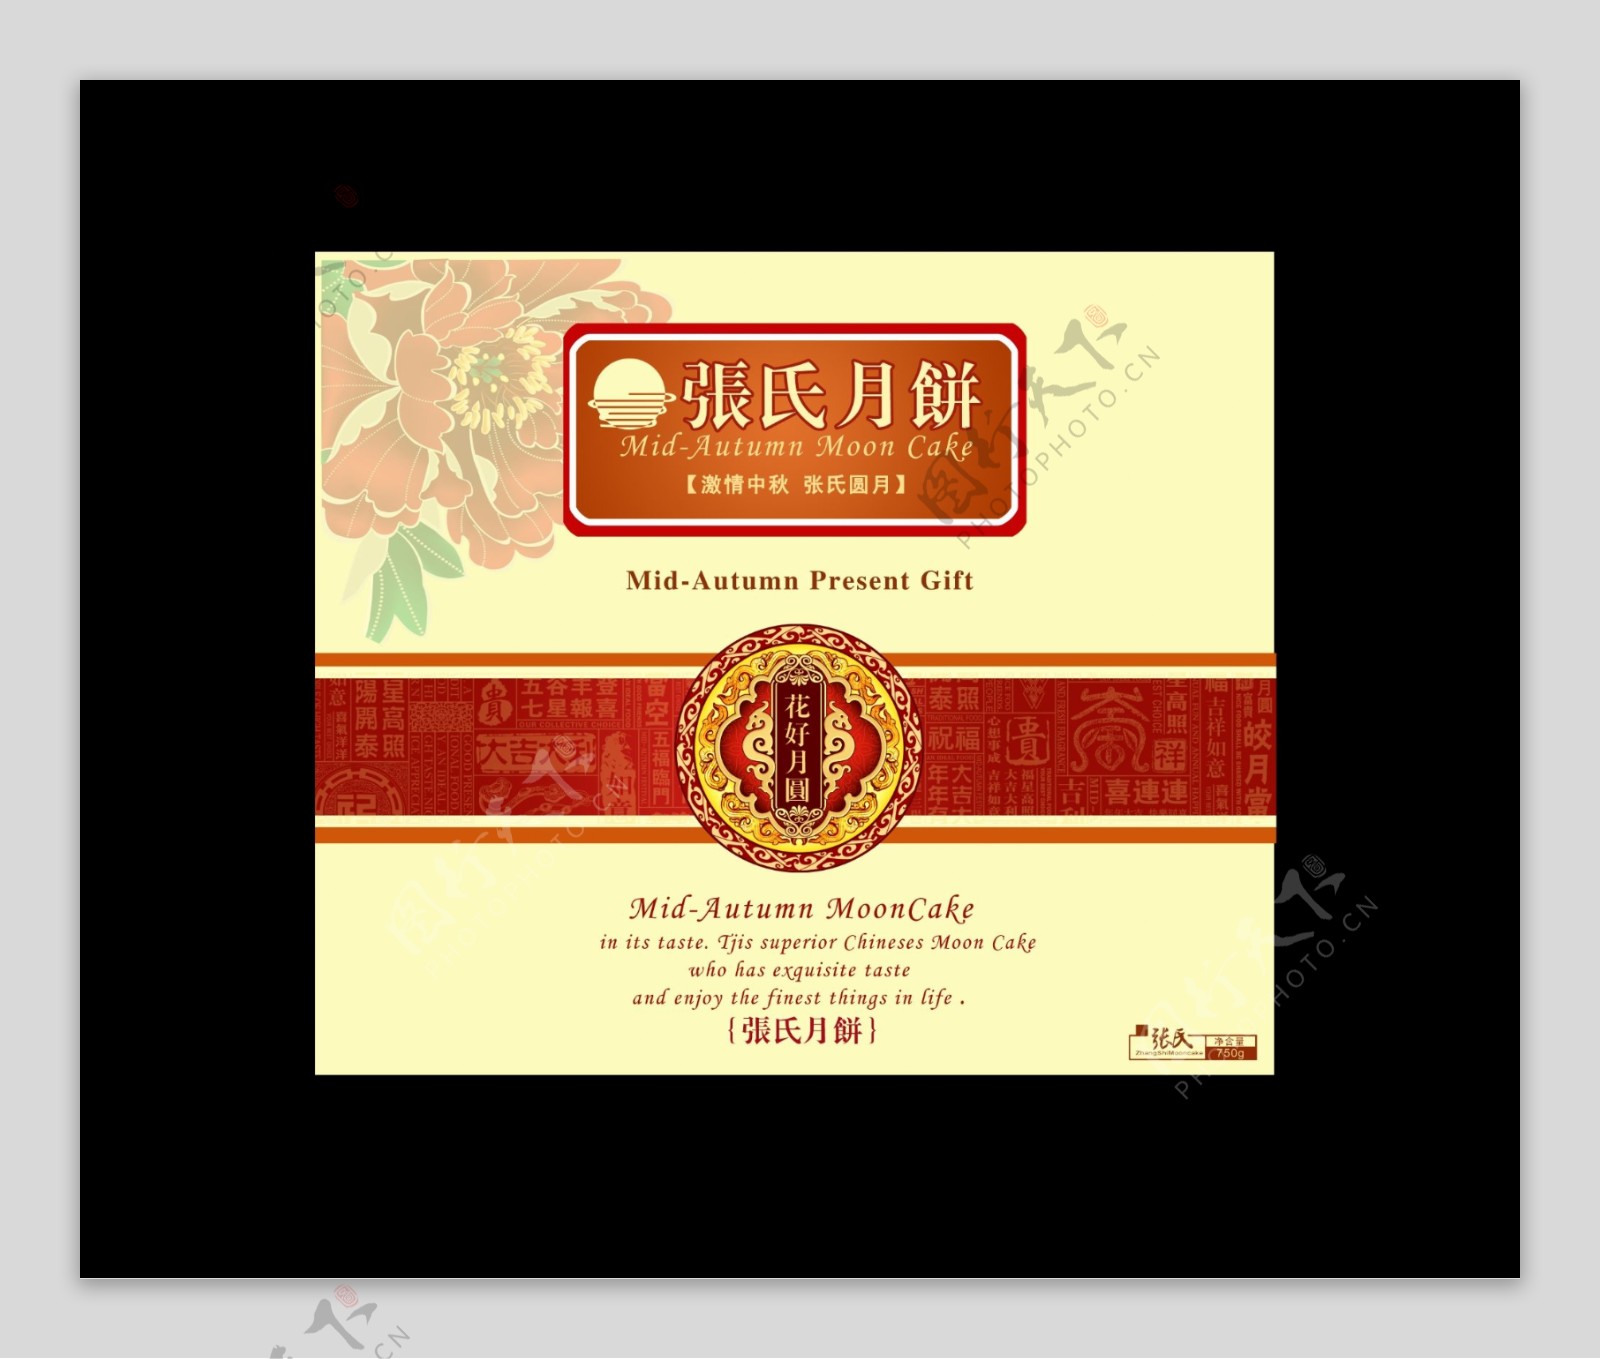 月饼包装中国包装系列